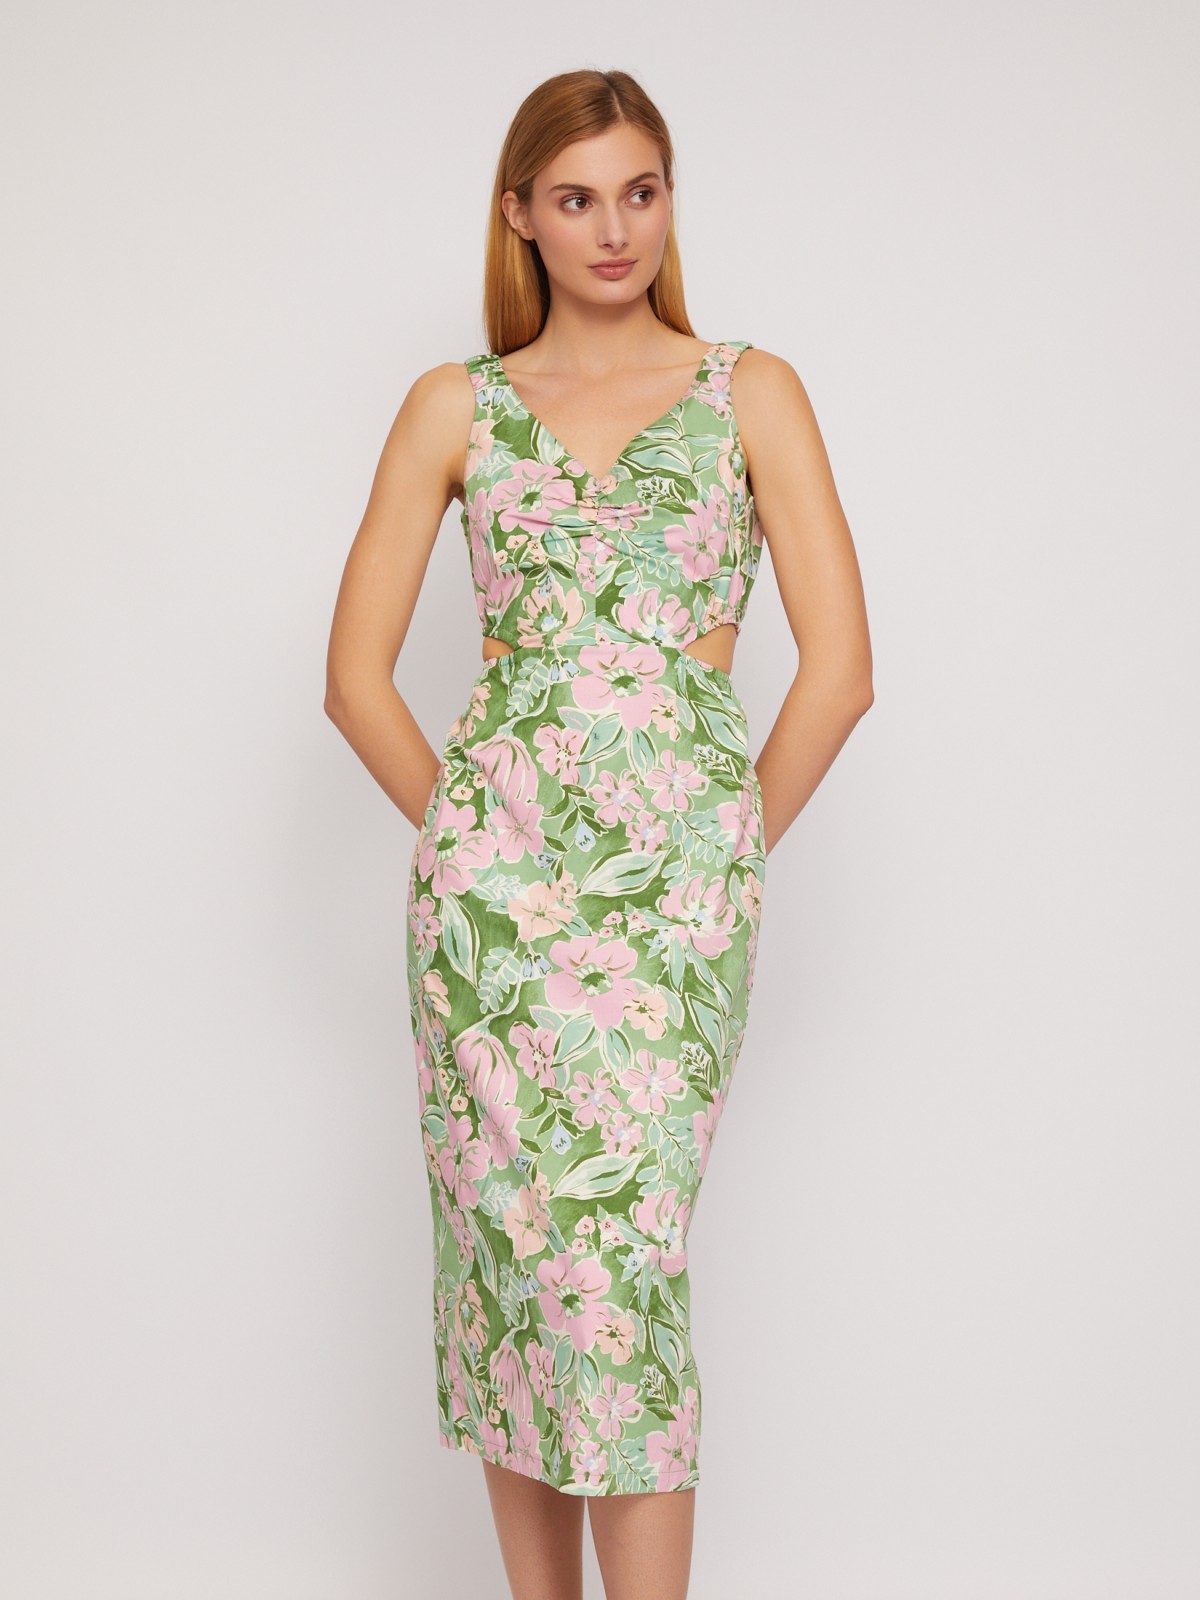 Платье-сарафан из хлопка с вырезами на талии zolla 024248259533, цвет зеленый, размер XS